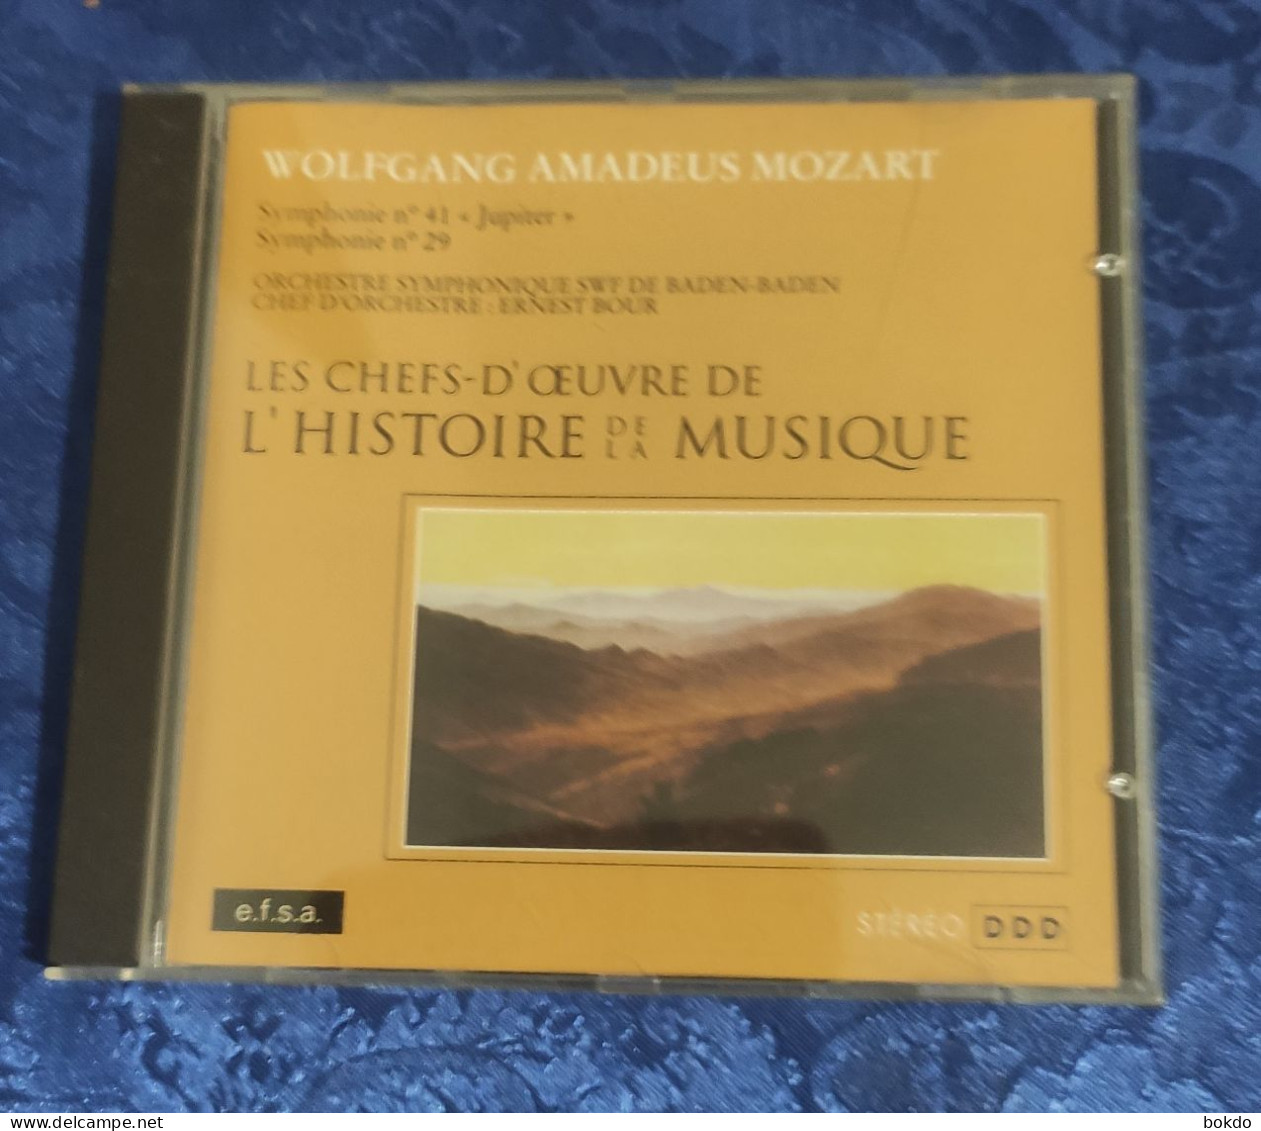 Mozart - Symphonie N° 41 Et N° 29 - Klassiekers